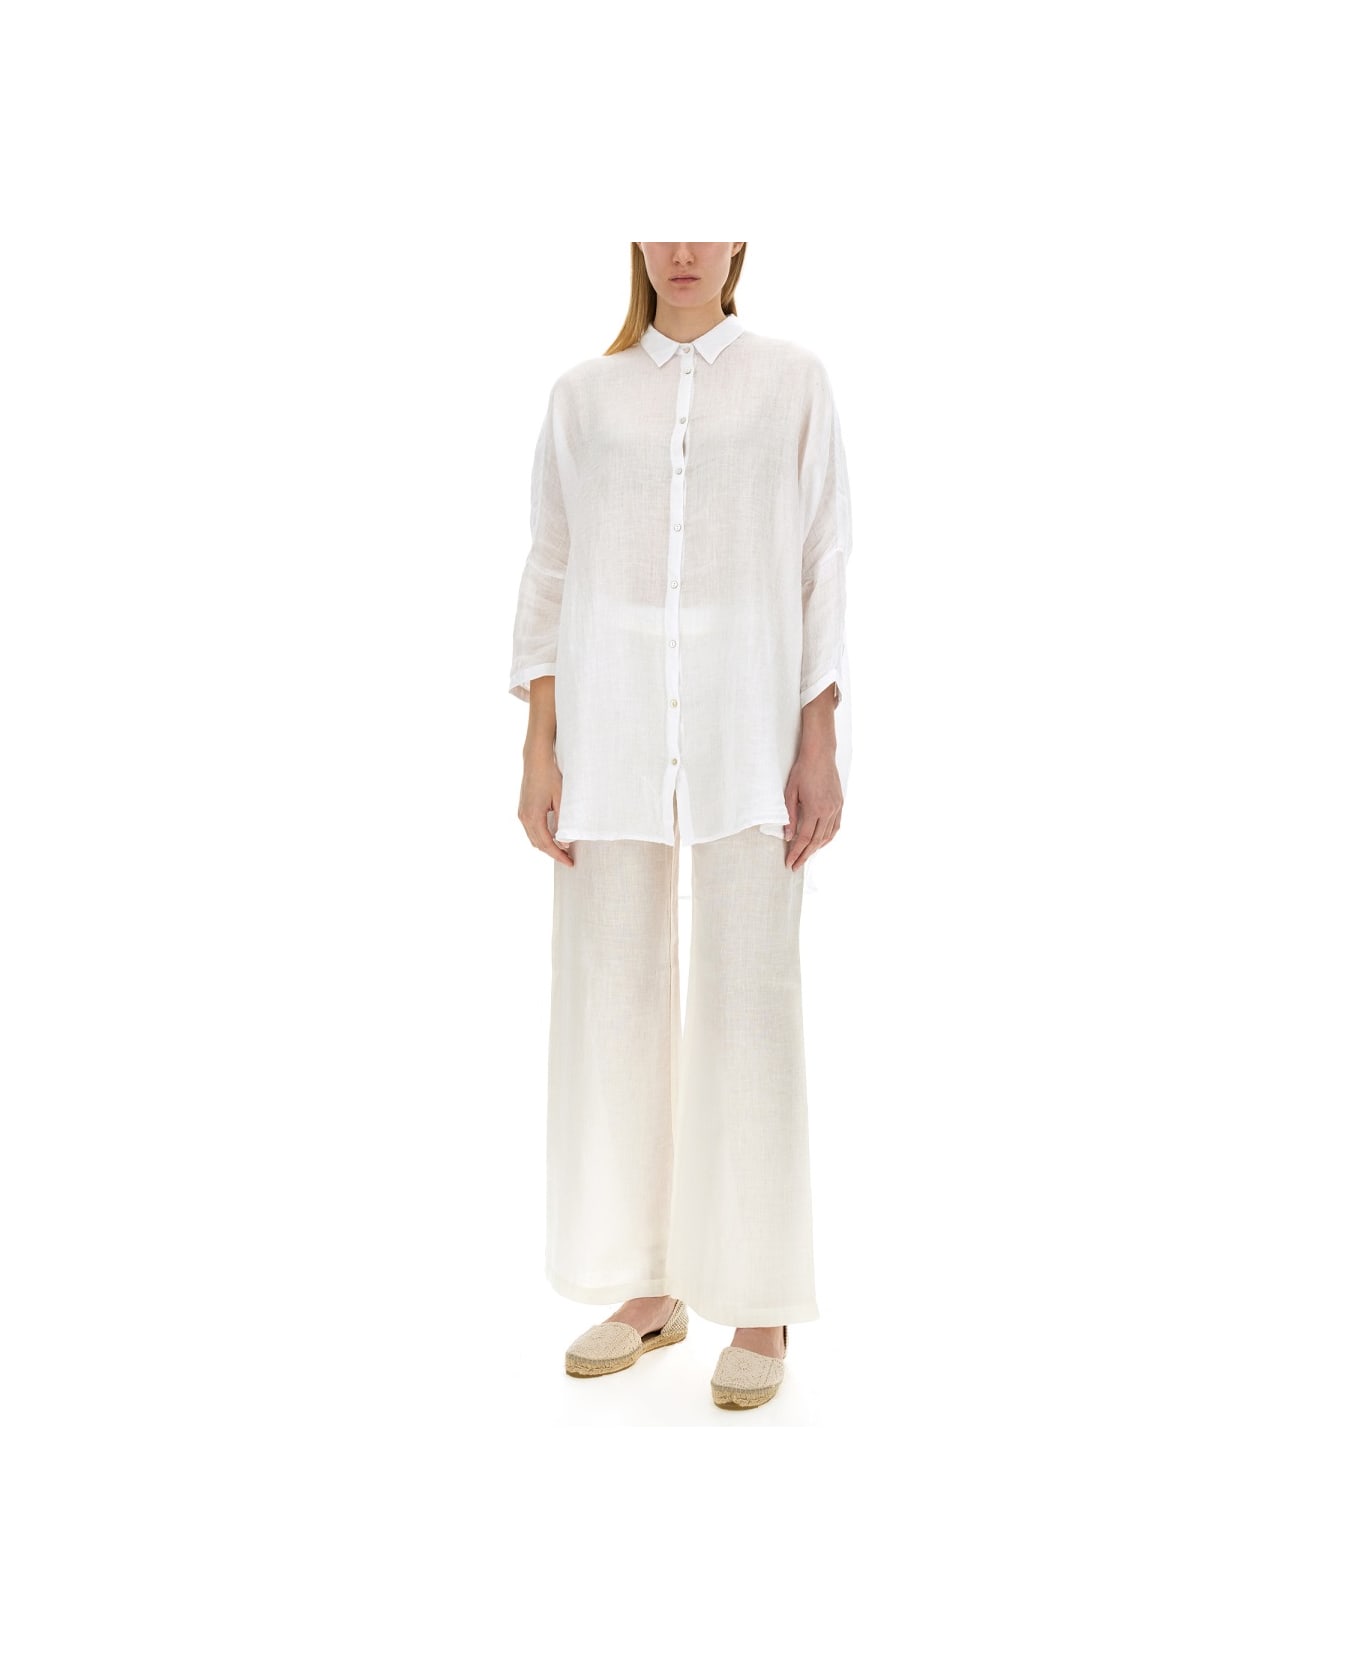 120% Lino Linen Shirt - WHITE シャツ